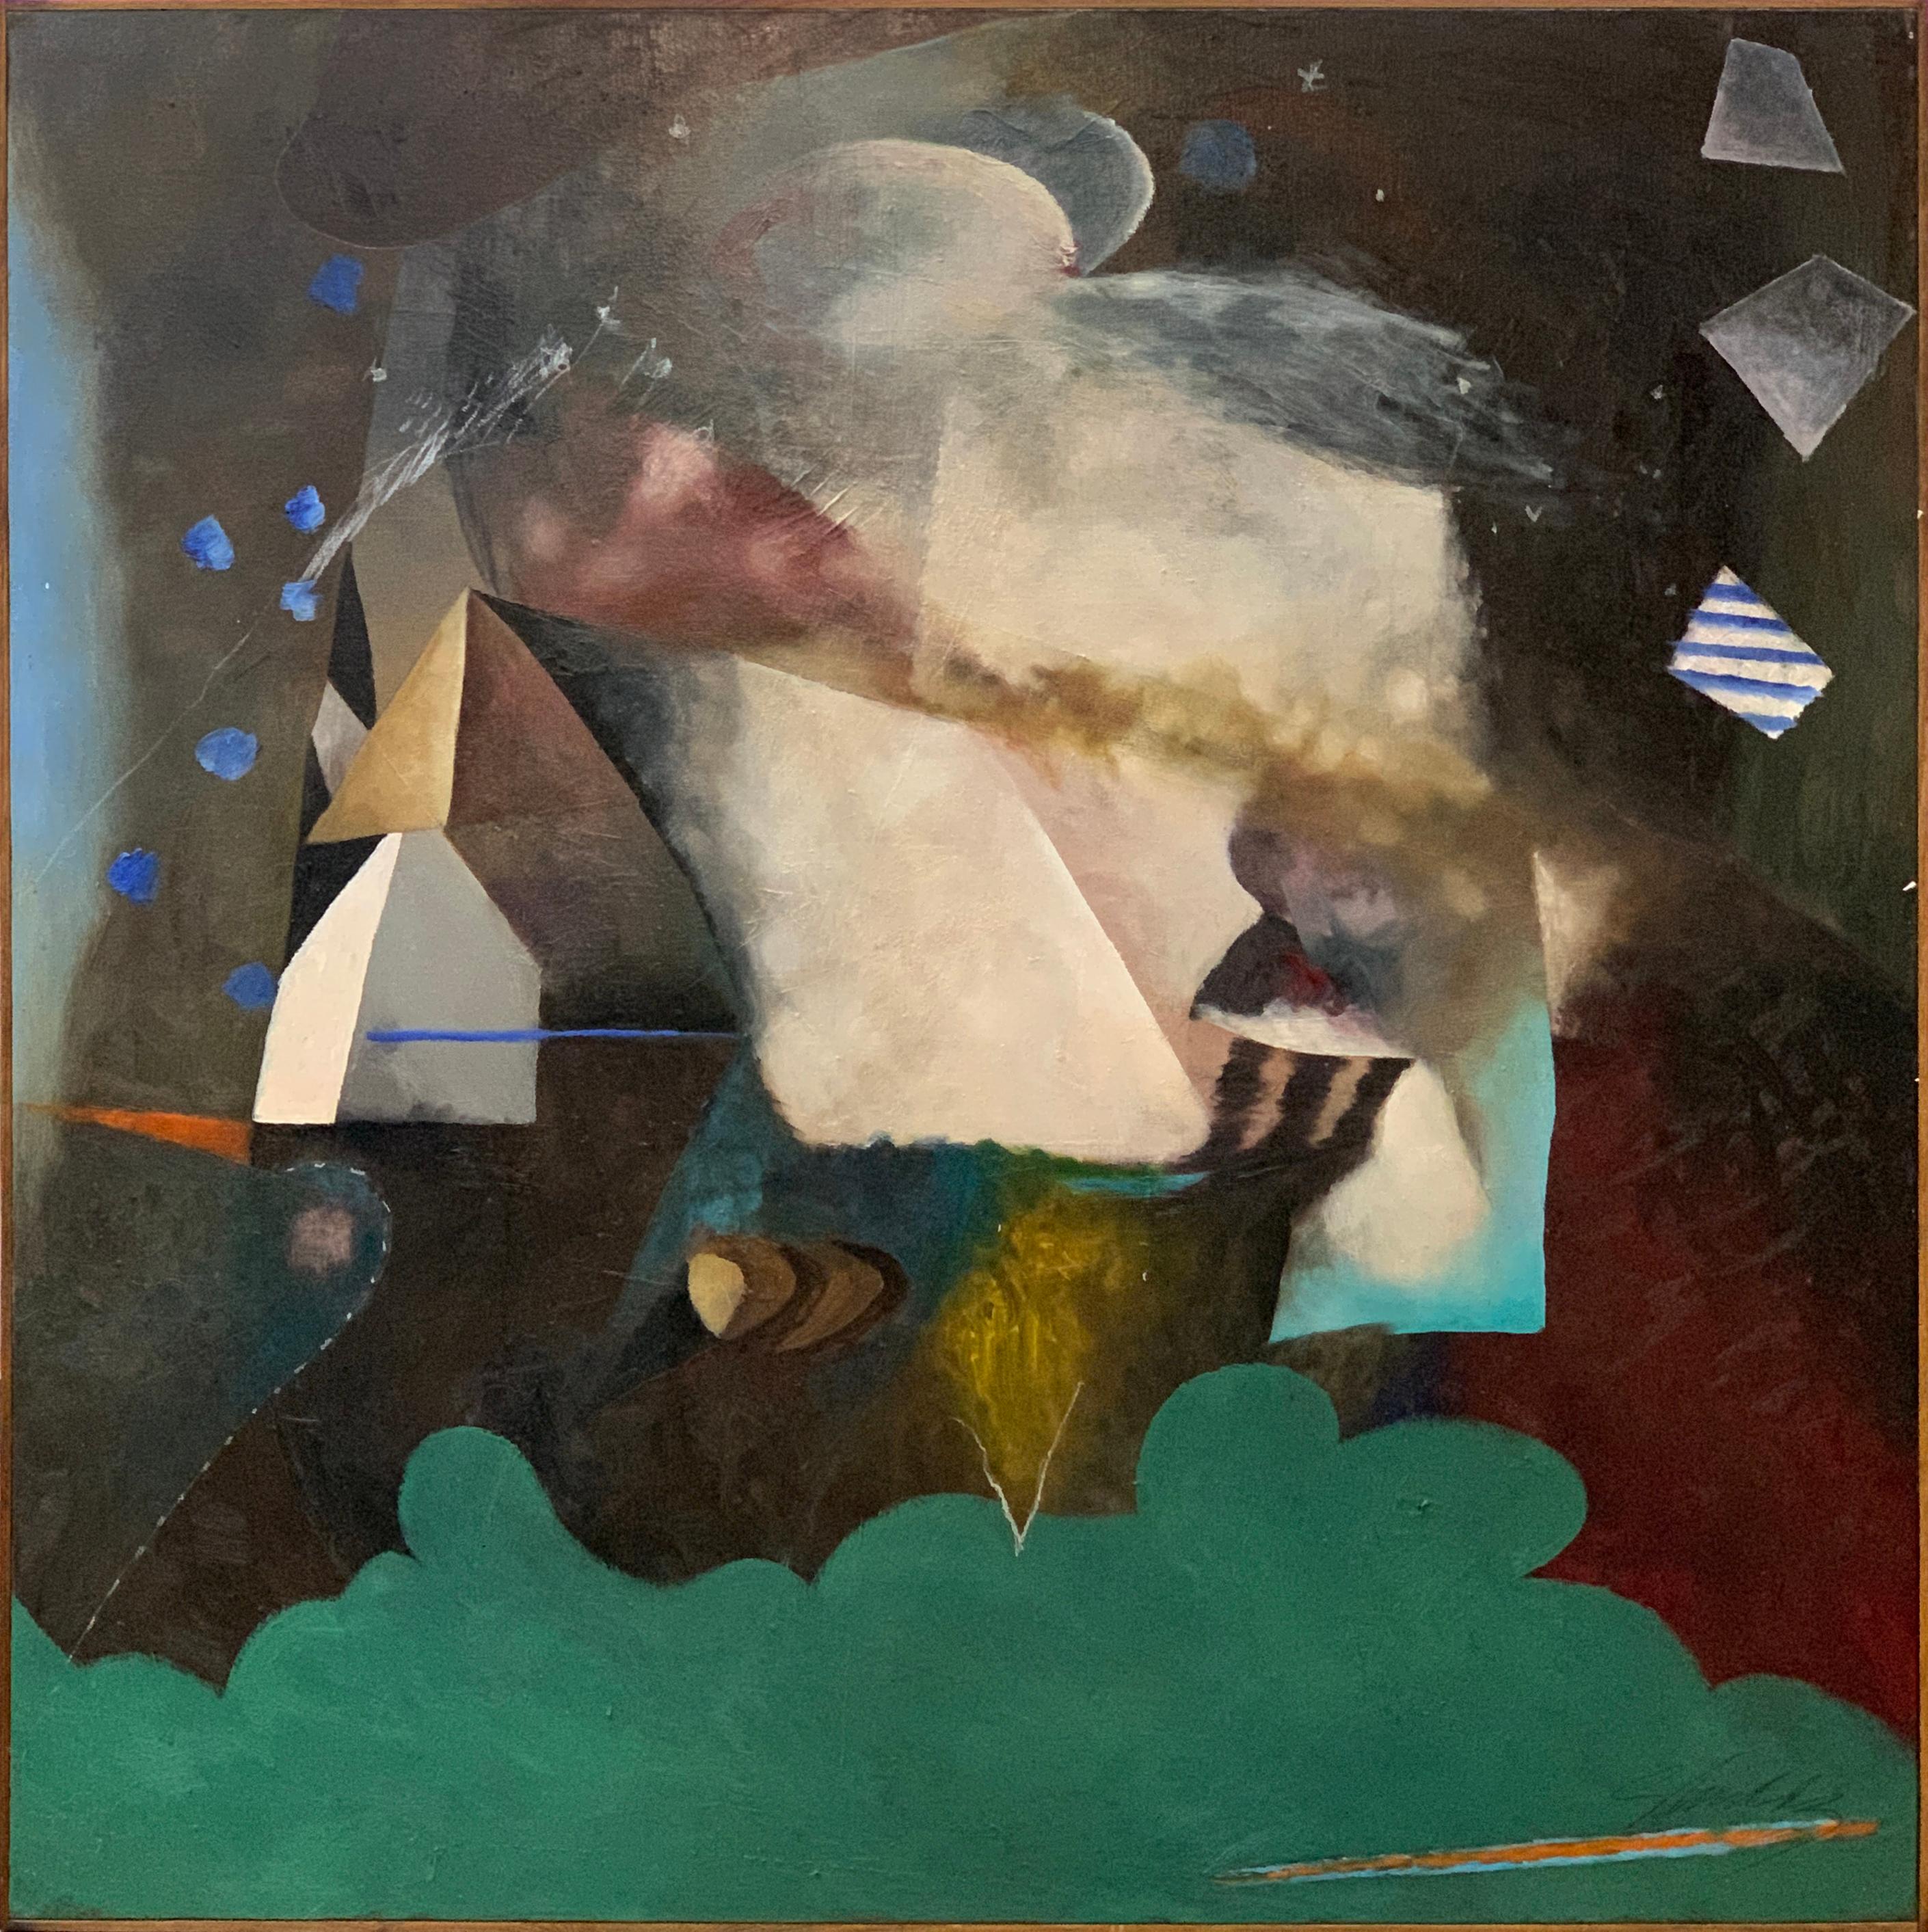 Abstract Painting William Shields  - Peinture à l'huile abstraite sur toile « A Piece of Heaven » de l'illustrateur Bill Shields